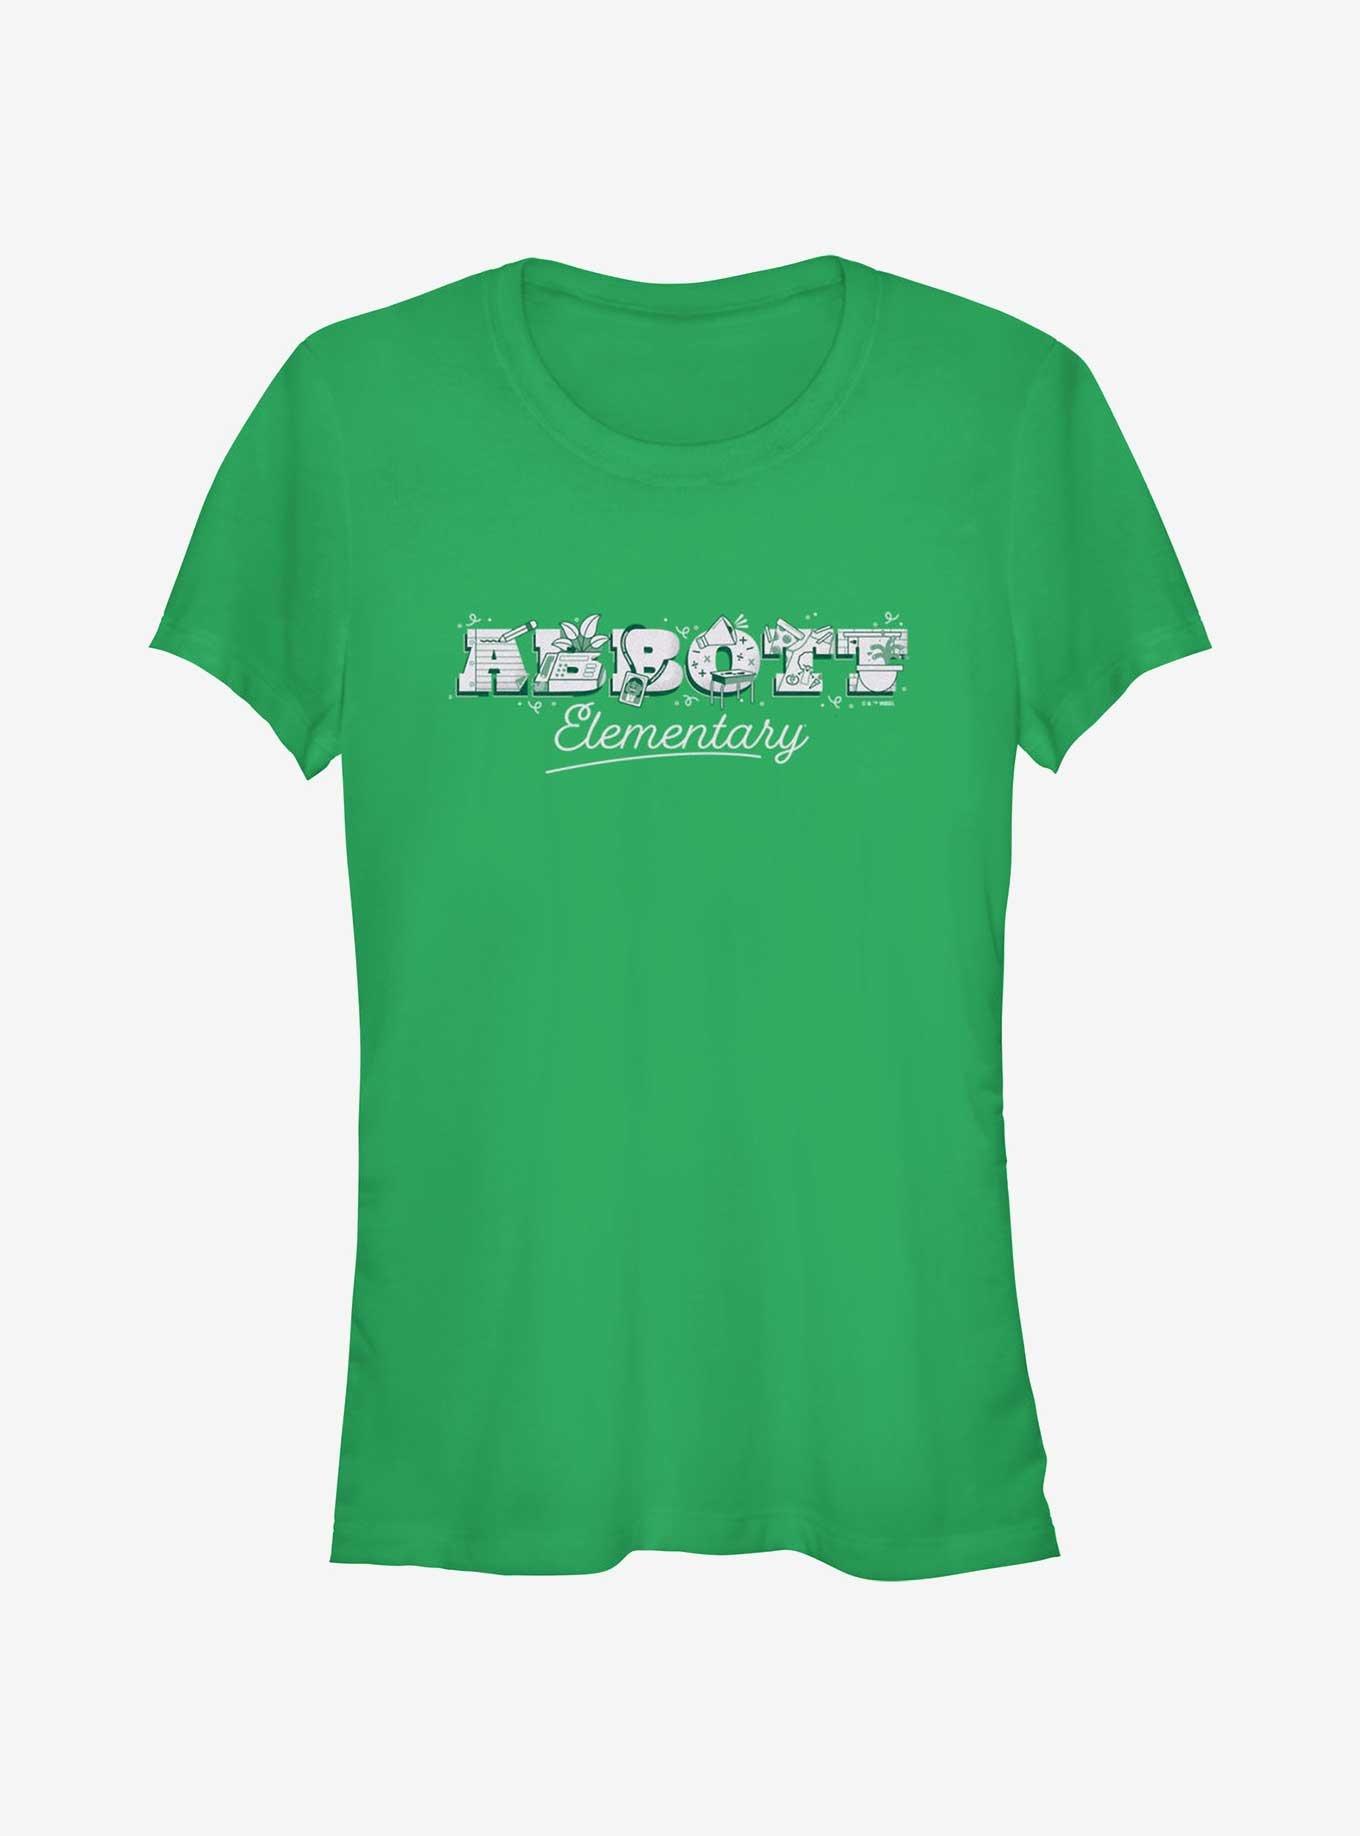 Abbott Elementary Graphic Logo Girls T-Shirt